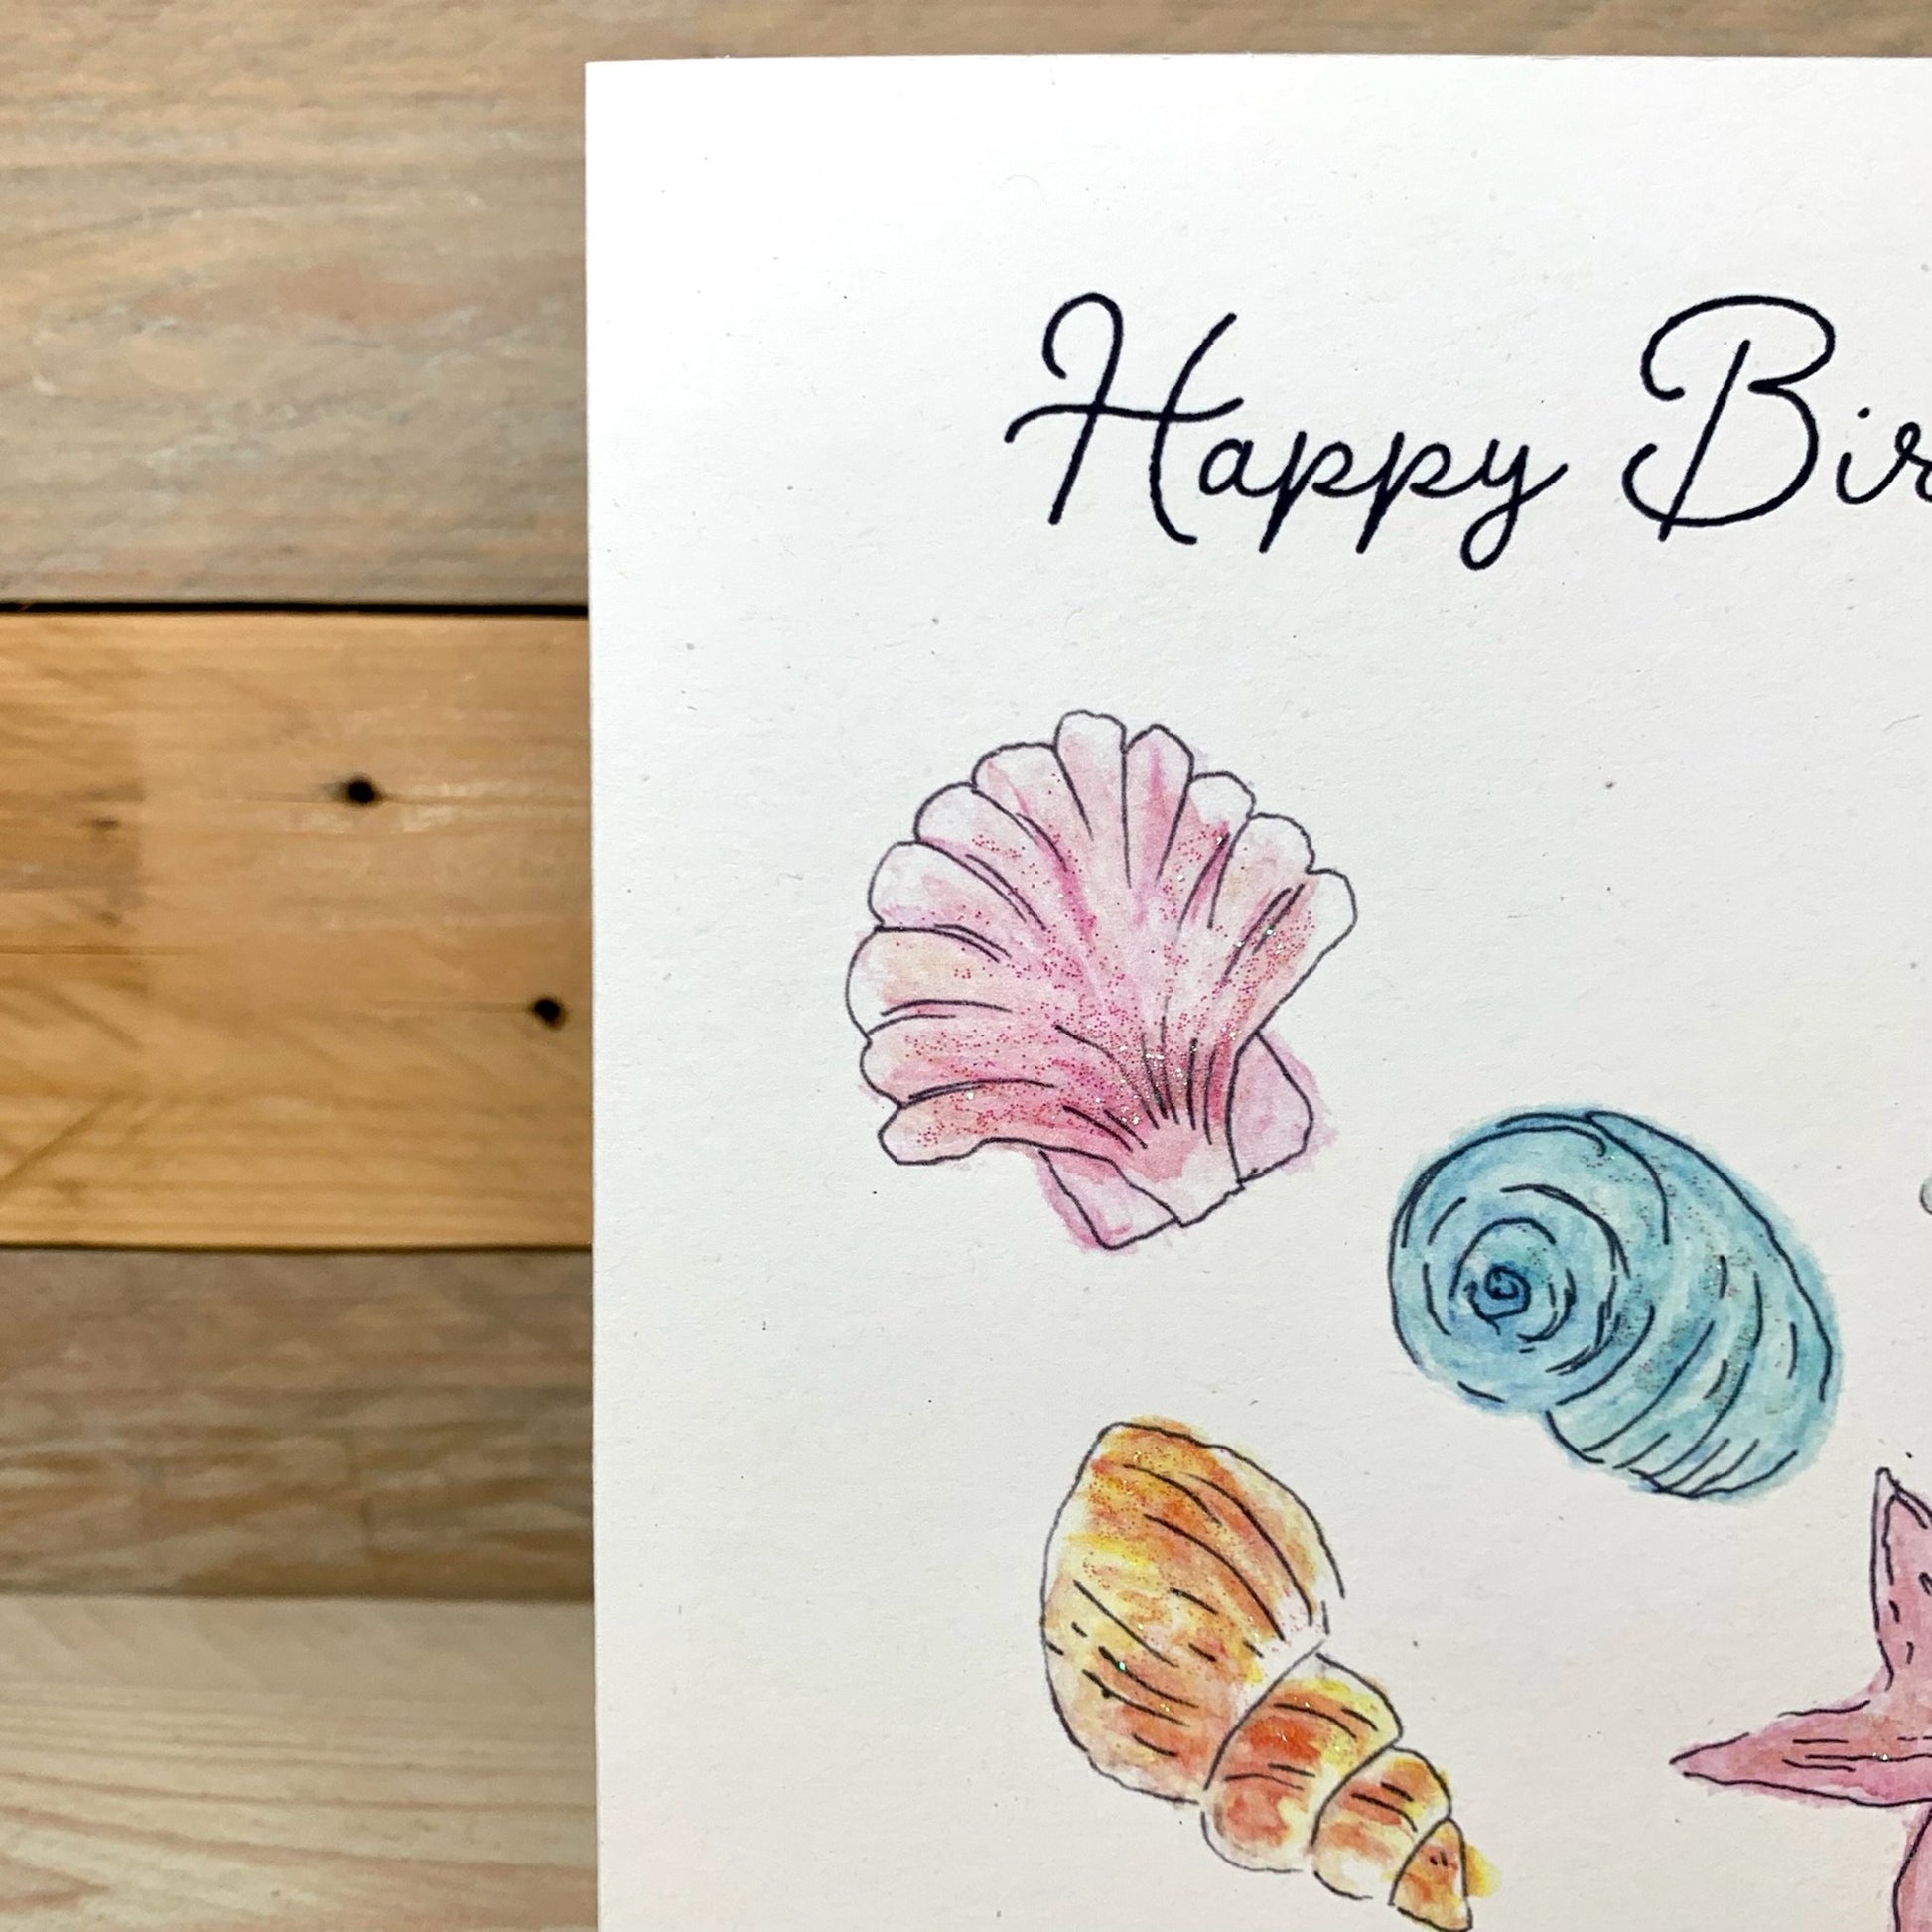 Seashore Treasure Birthday Card - Arty Bee Designs 